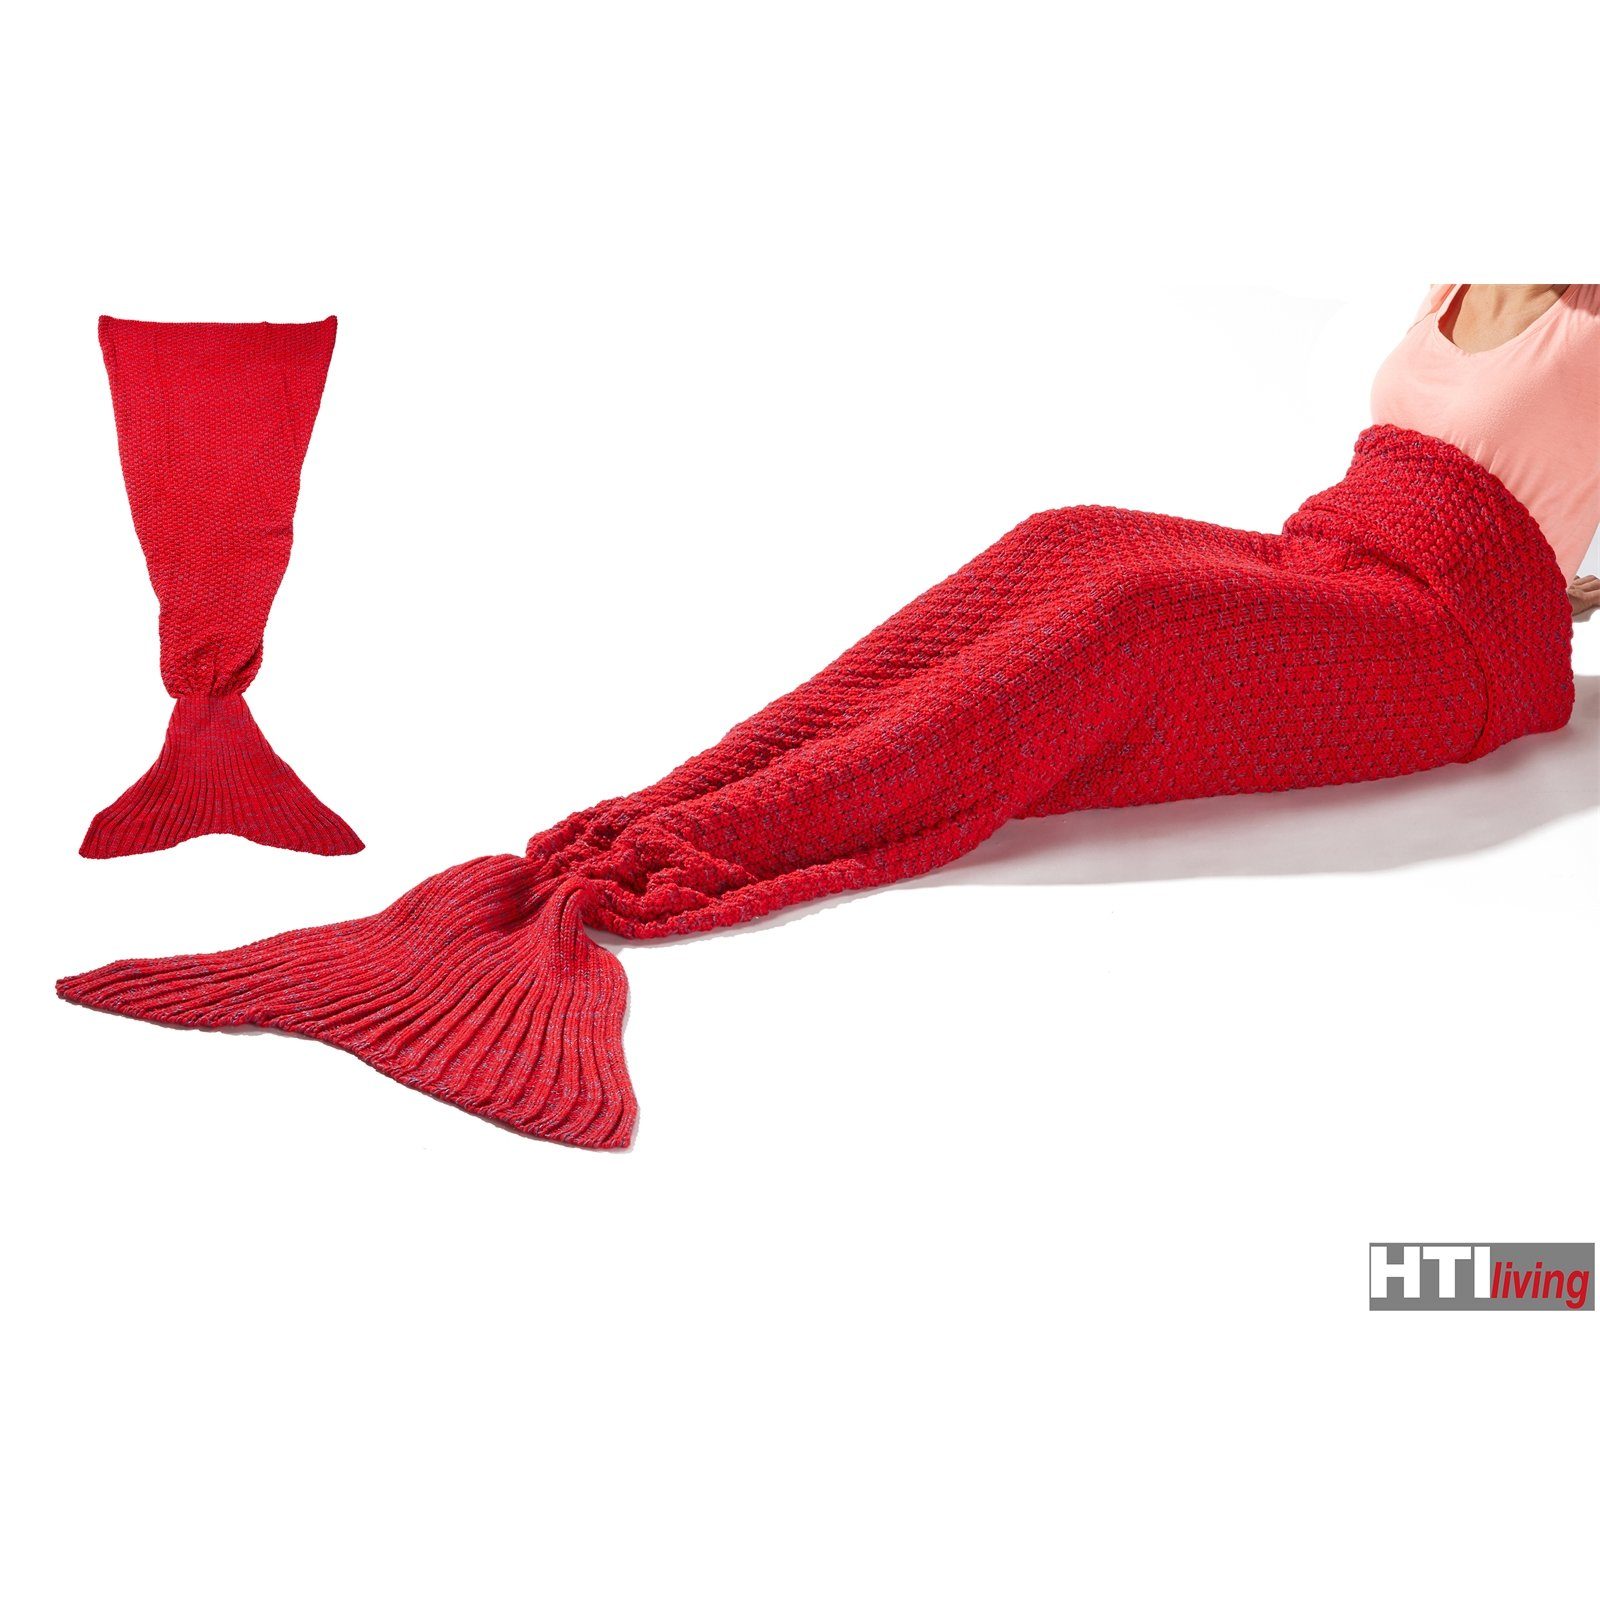 HTI-Living Meerjungfrau, Wohndecke Decke